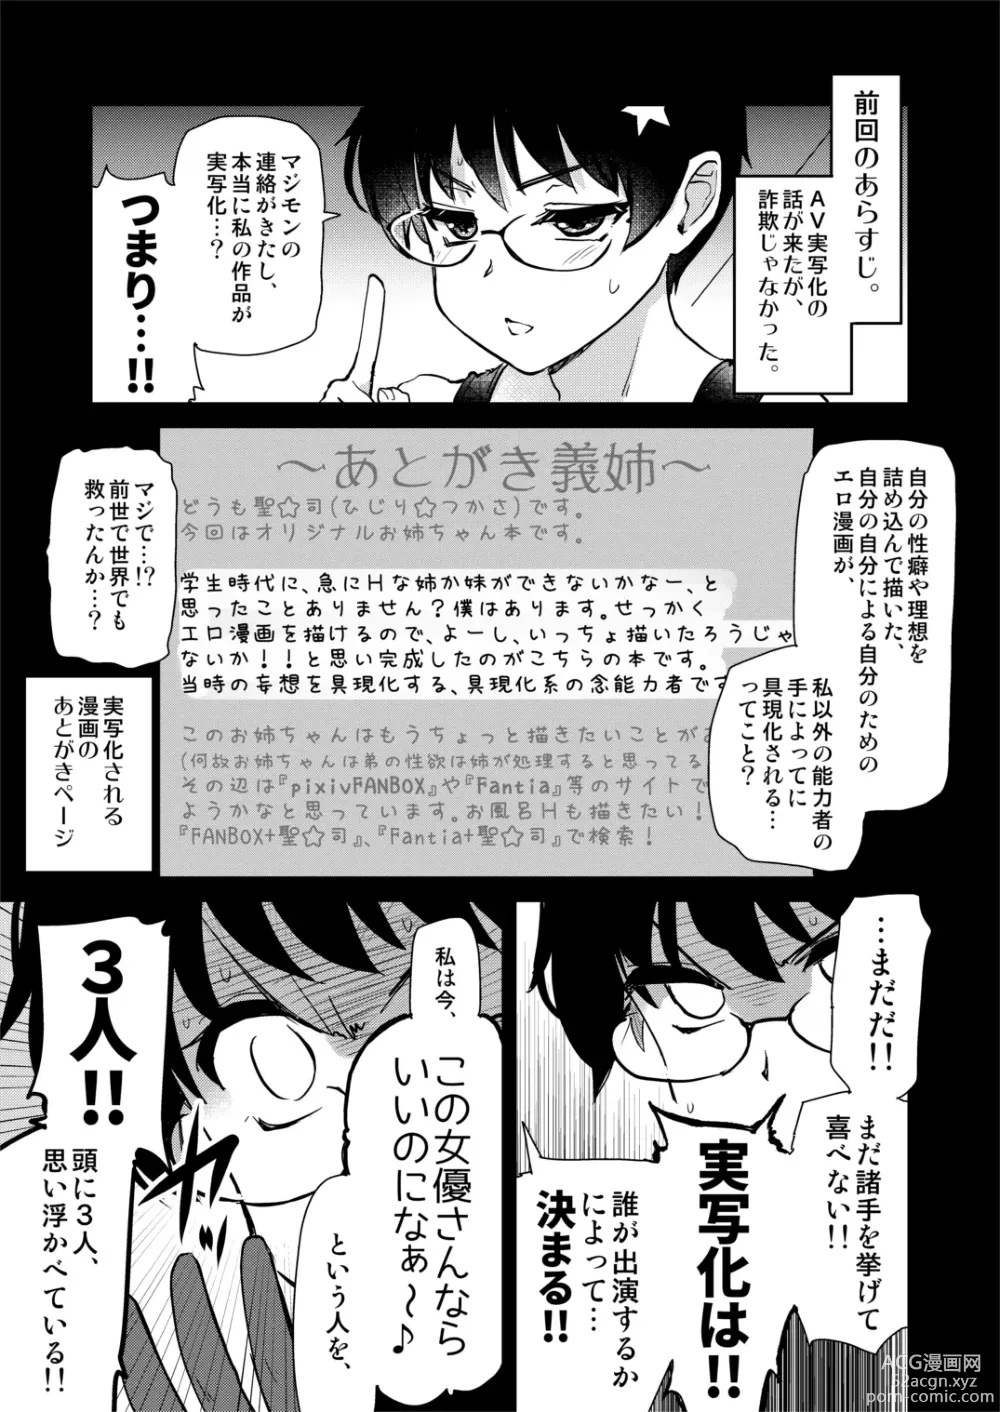 Page 8 of doujinshi Jibun no Kaita Manga ga Jissha AV ni!? Sekkaku nano de Satsuei Genba no Kengaku ni Ittekimashita.